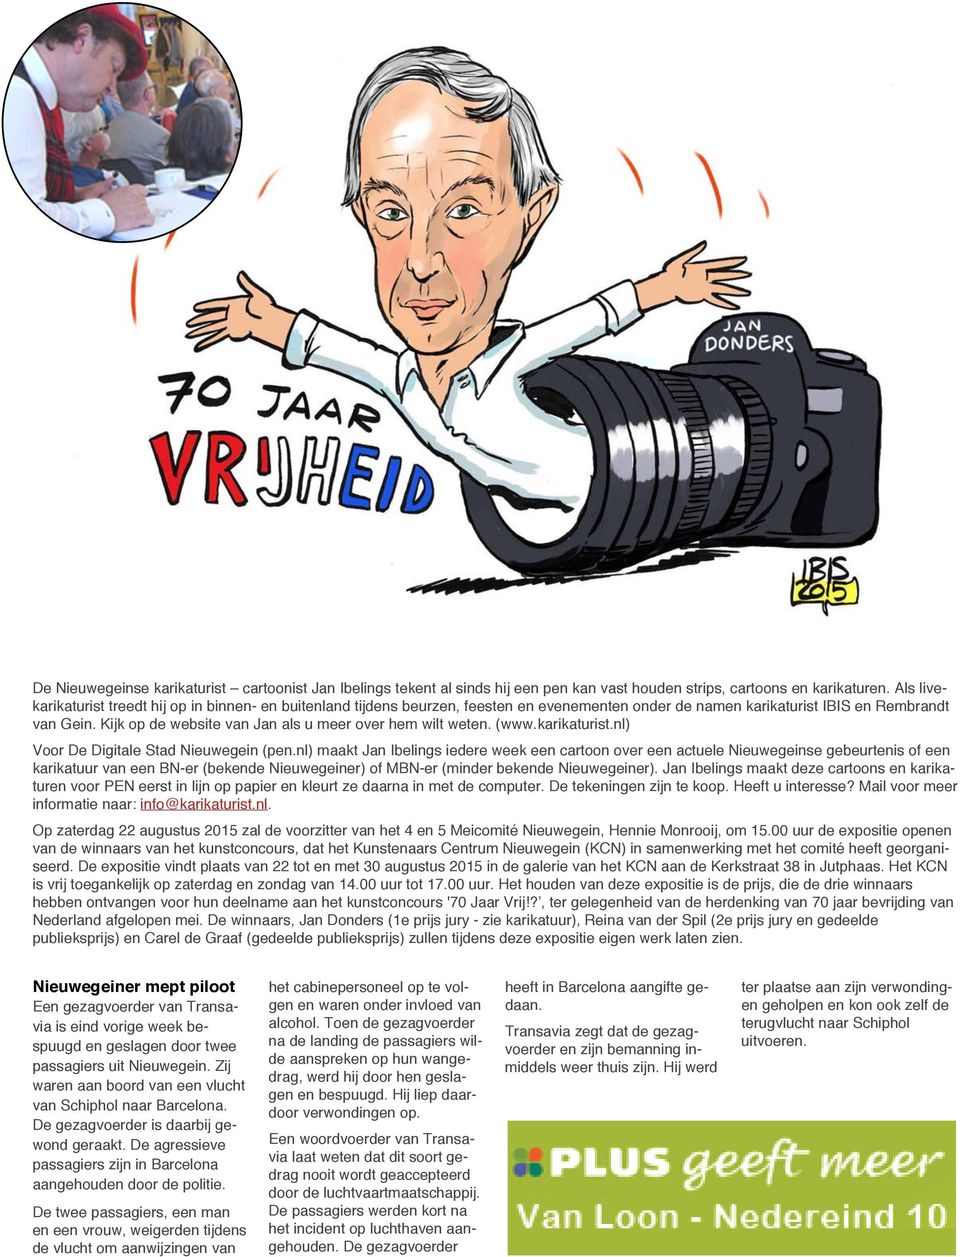 Kijk op de website van Jan als u meer over hem wilt weten. (www.karikaturist.nl) Voor De Digitale Stad Nieuwegein (pen.